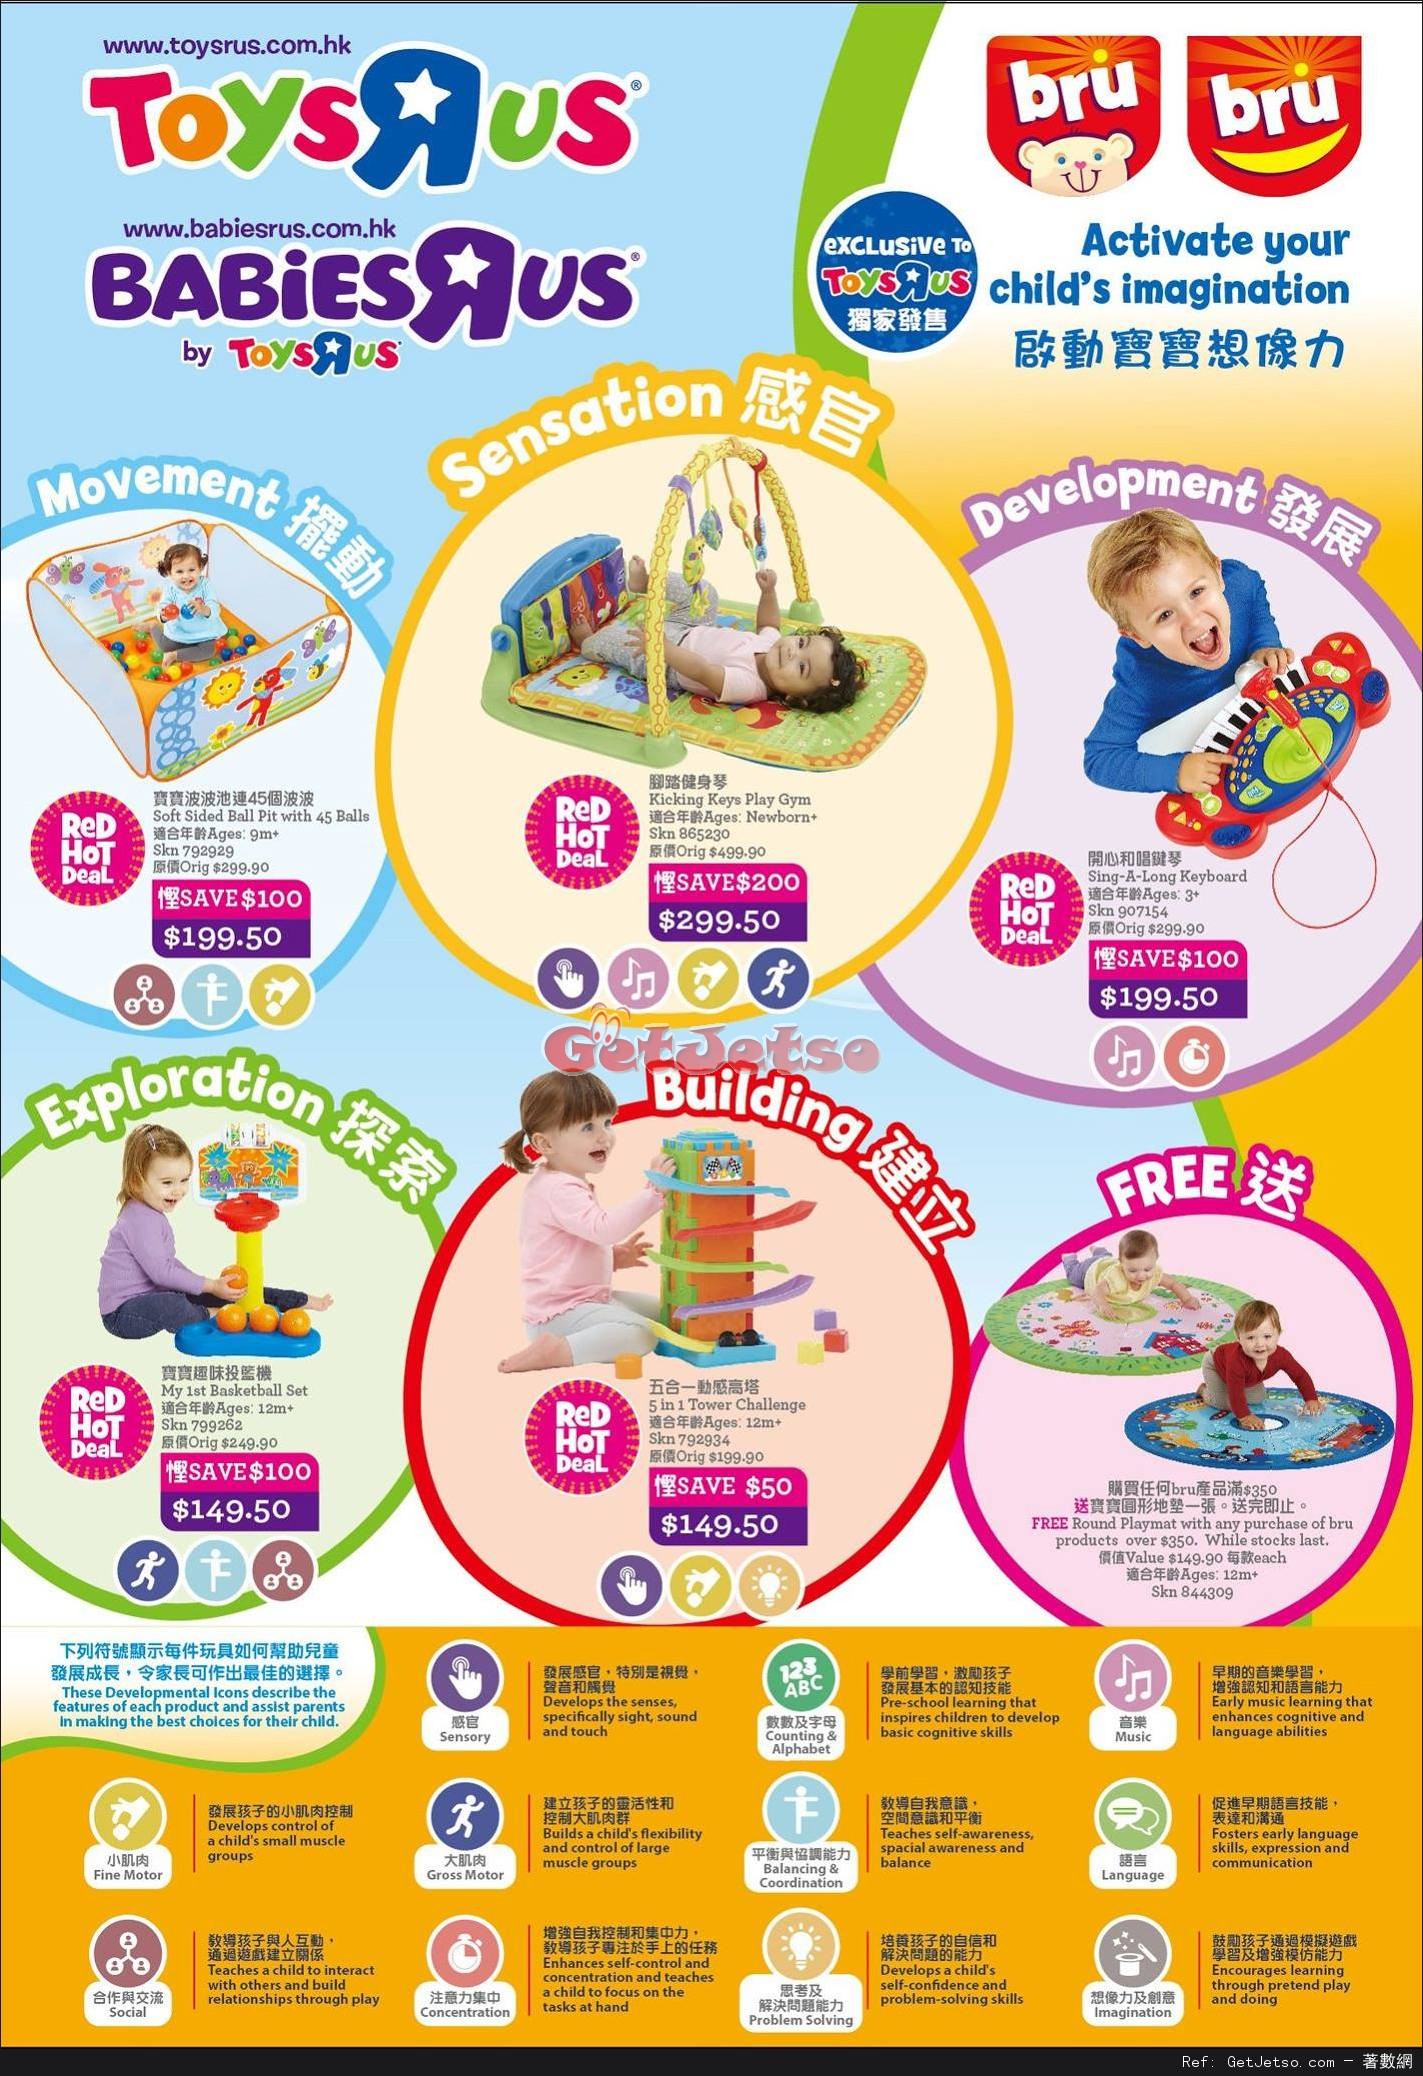 玩具反斗城Toys"R"Us 嬰兒用品低至2折開倉優惠(至17年4月18日)圖片16